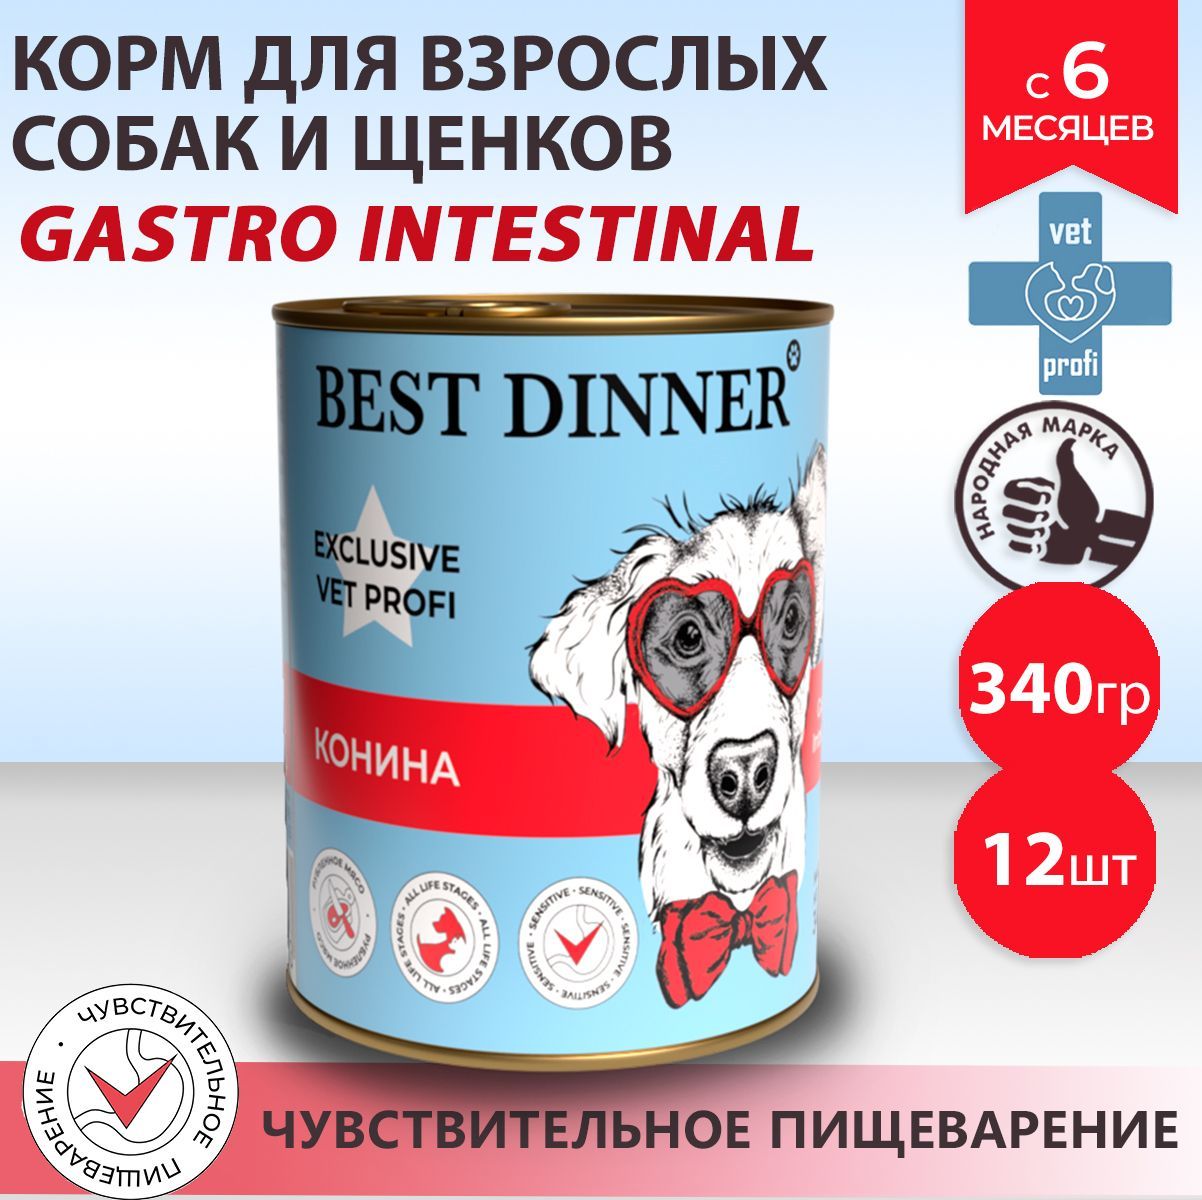 Корм бест для собак отзывы. Gastrointestinal корм для собак влажный. Корм Проплан гастро Интестинал для собак консервы. Best dinner Exclusive vet Profi Gastro intestinal кусочки в соусе ягненок.